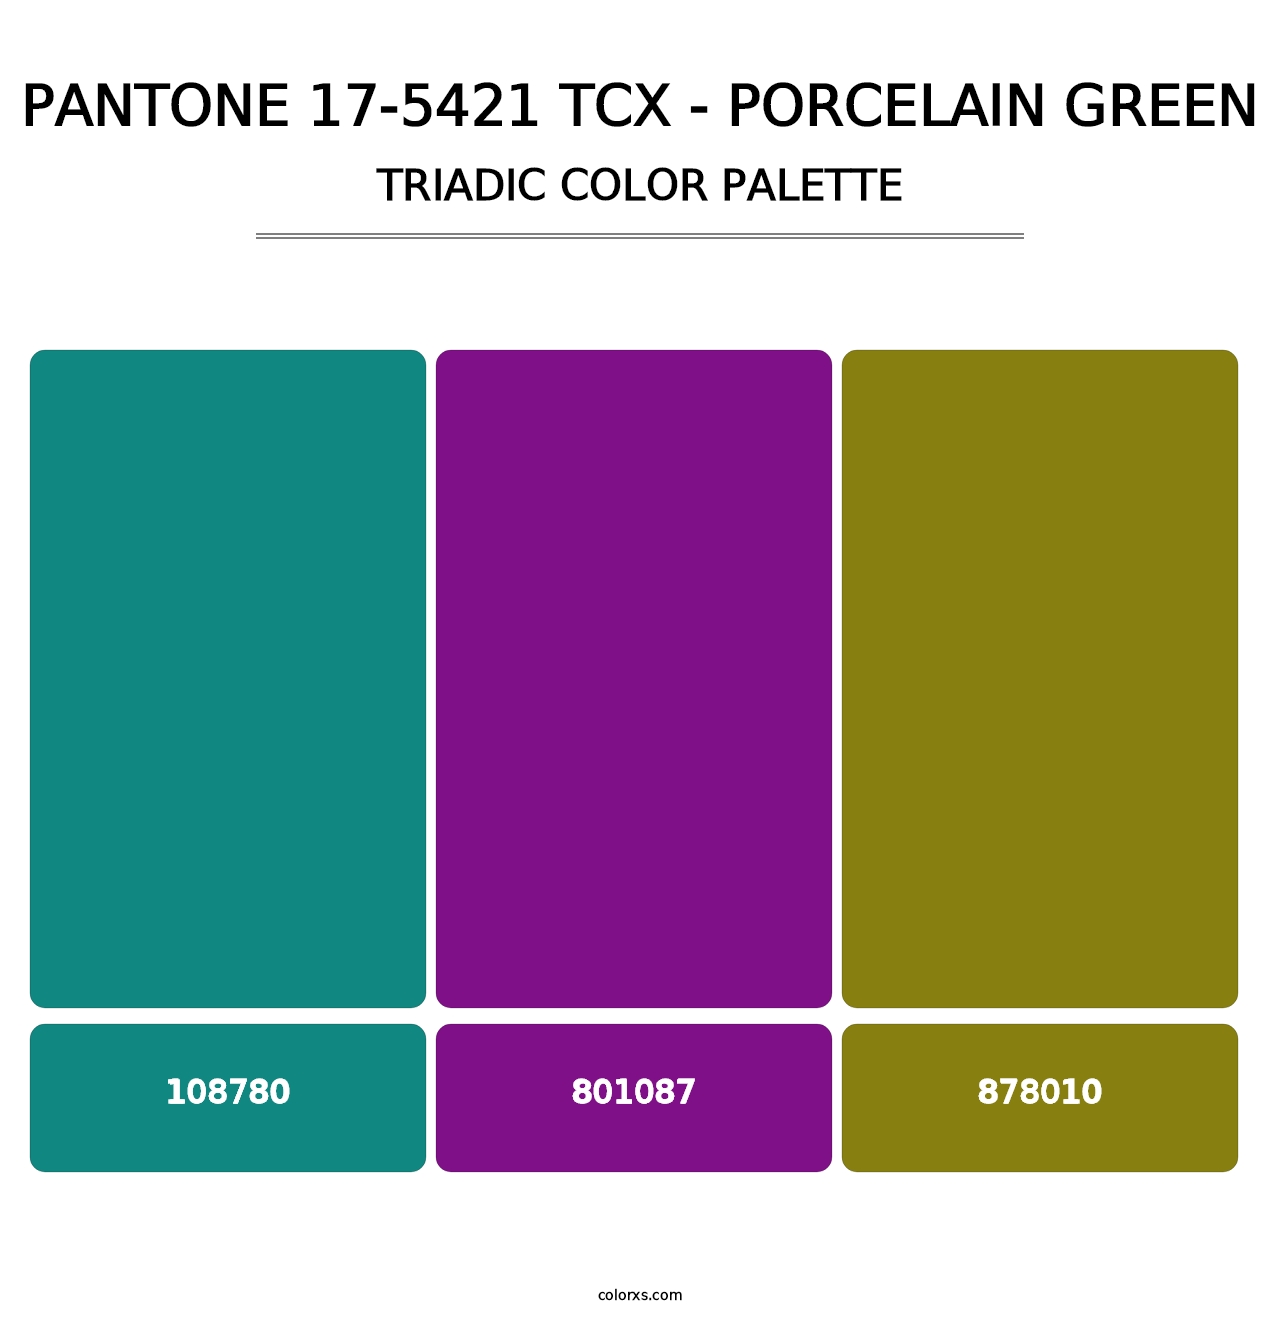 PANTONE 17-5421 TCX - Porcelain Green - Triadic Color Palette